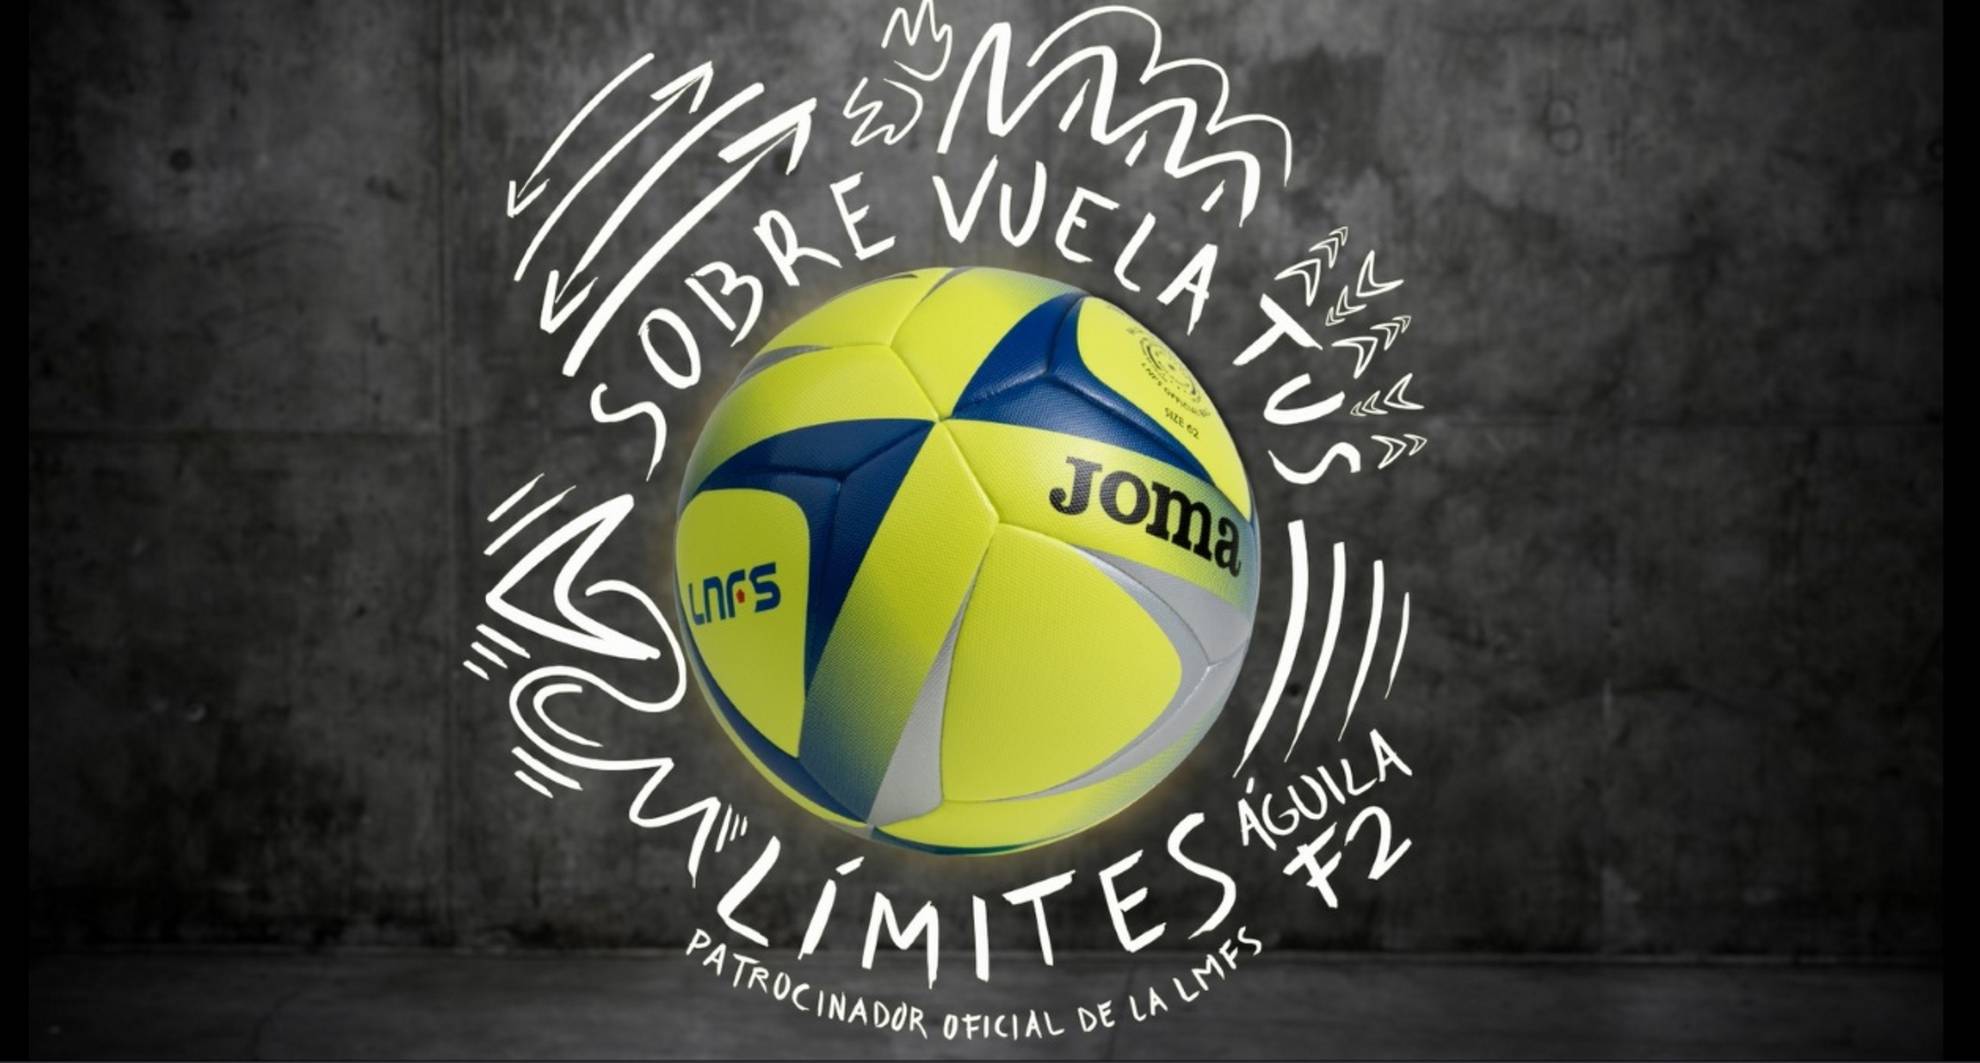 Echa a rodar el nuevo balón oficial de Joma en la LNFS